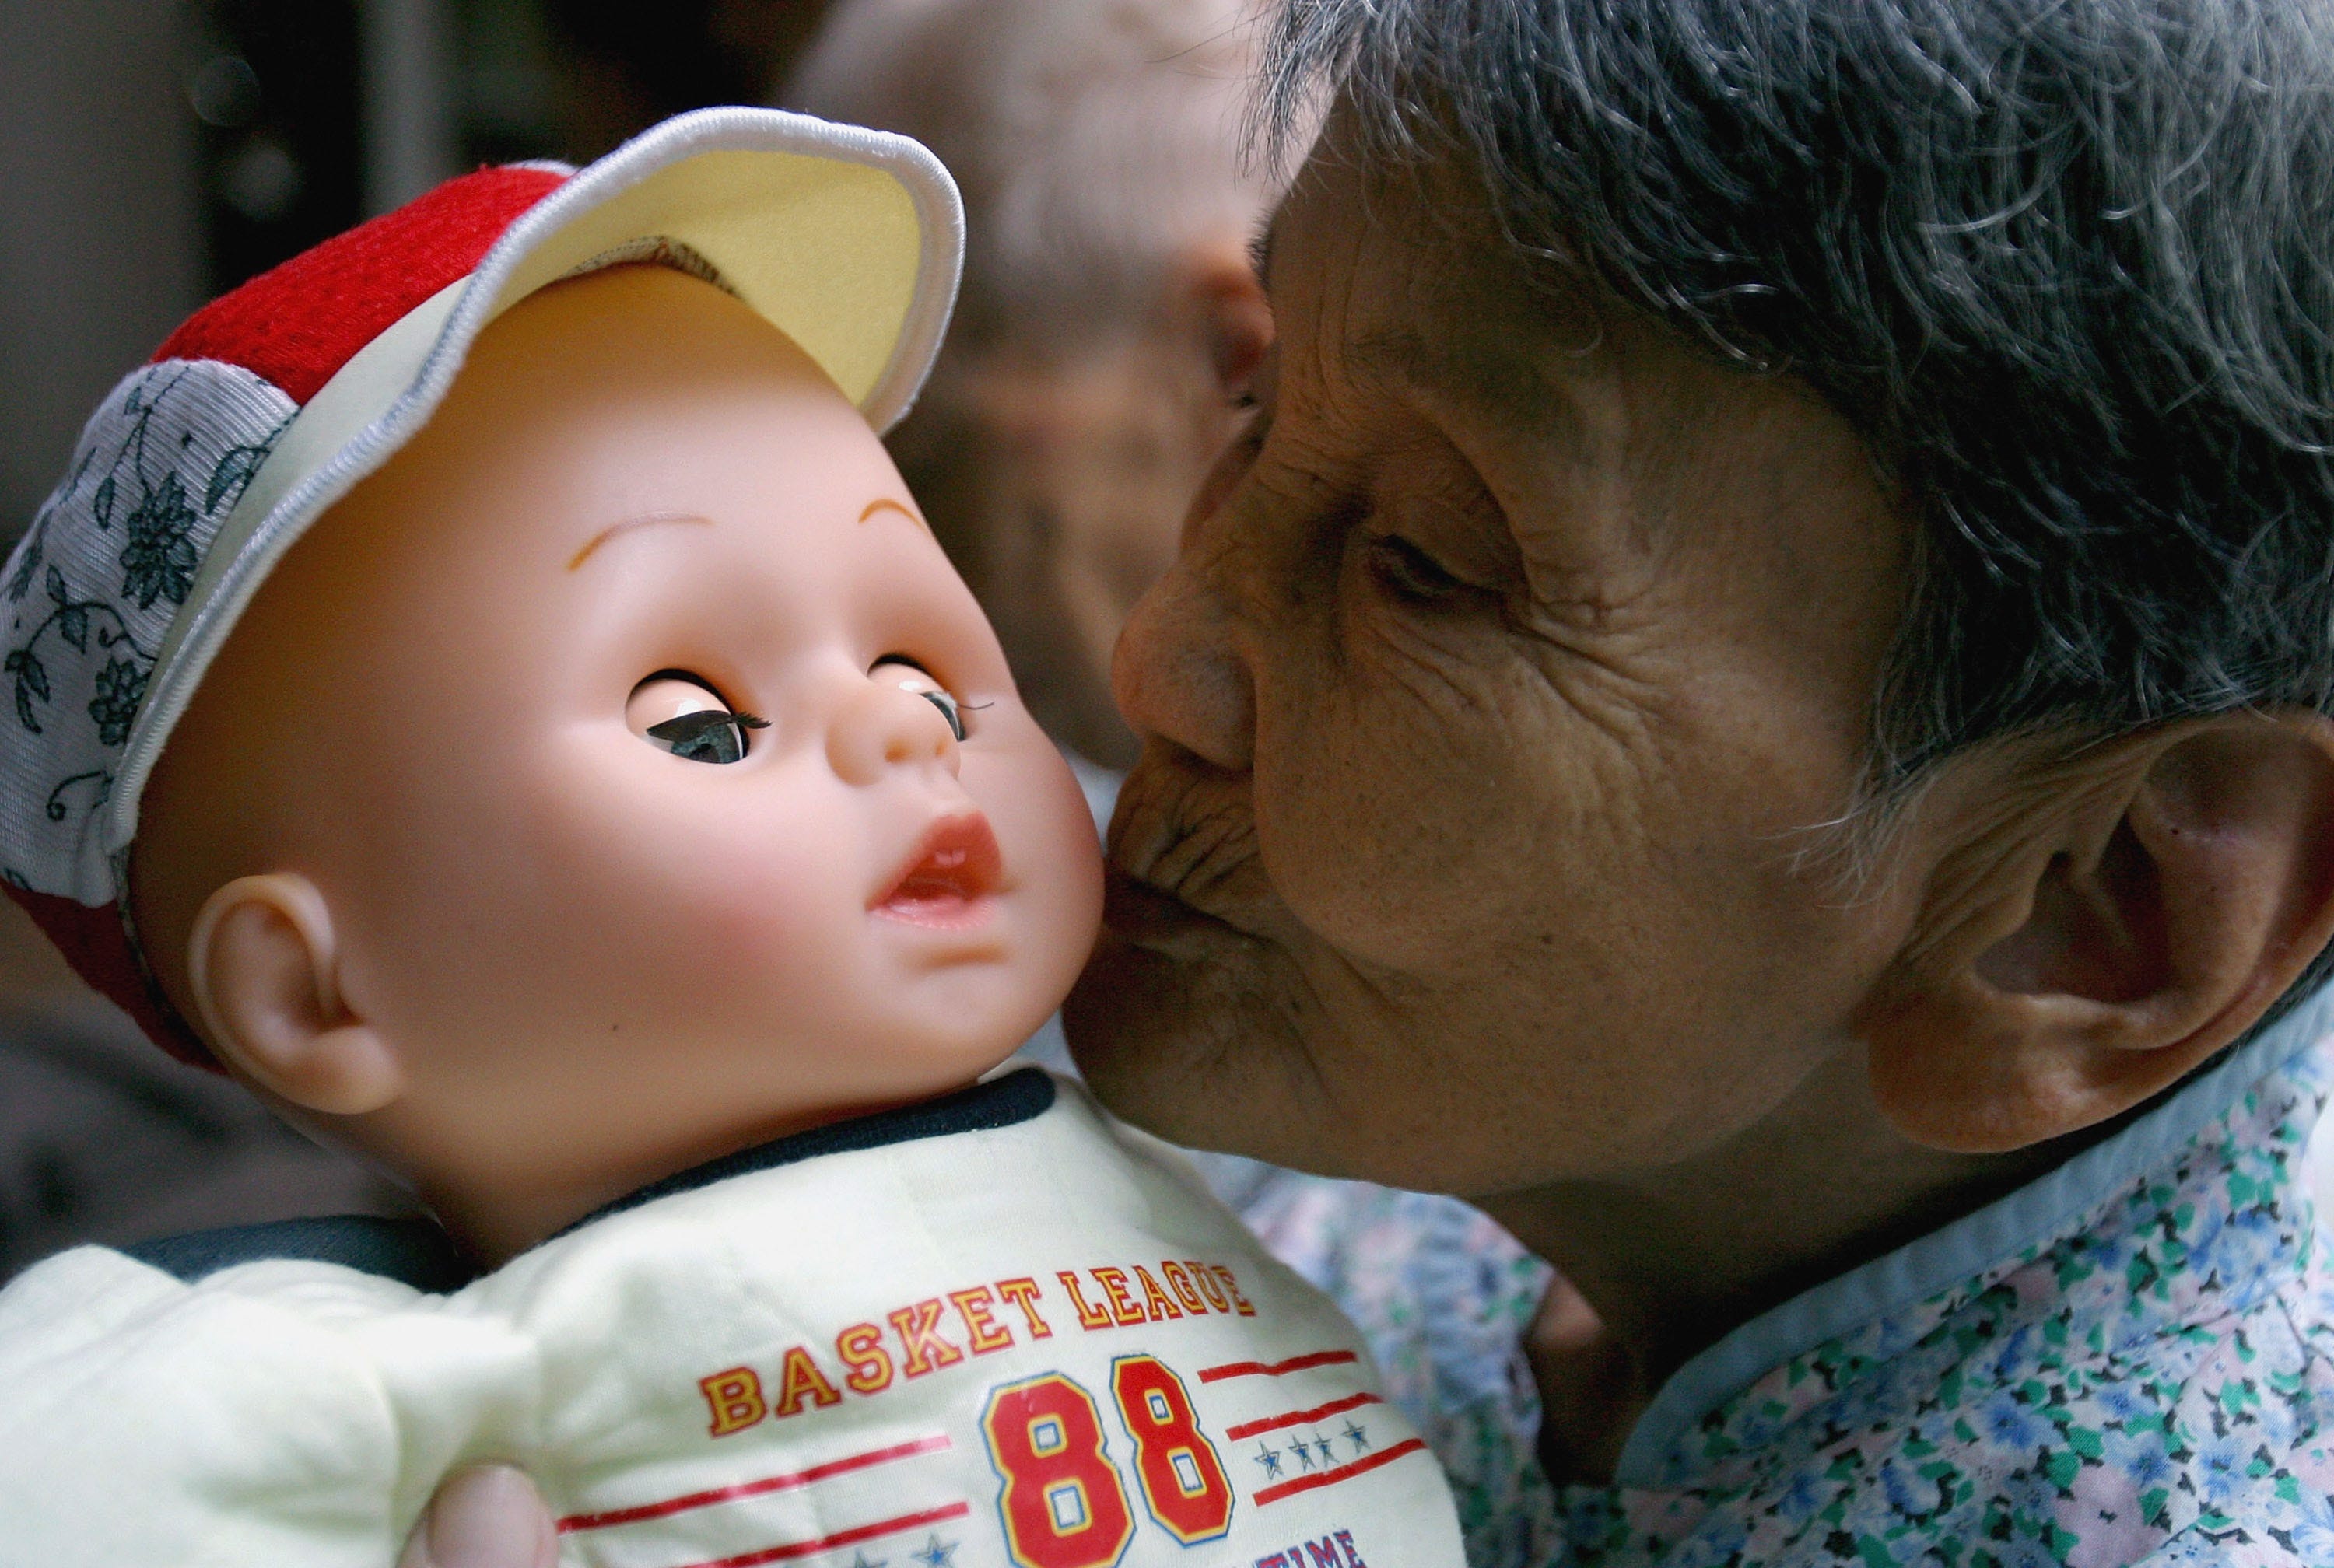 Eine demenzkranke ältere Frau bekommt eine Puppe geschenkt, die ihr helfen soll, sich an ihre Vergangenheit zu erinnern.